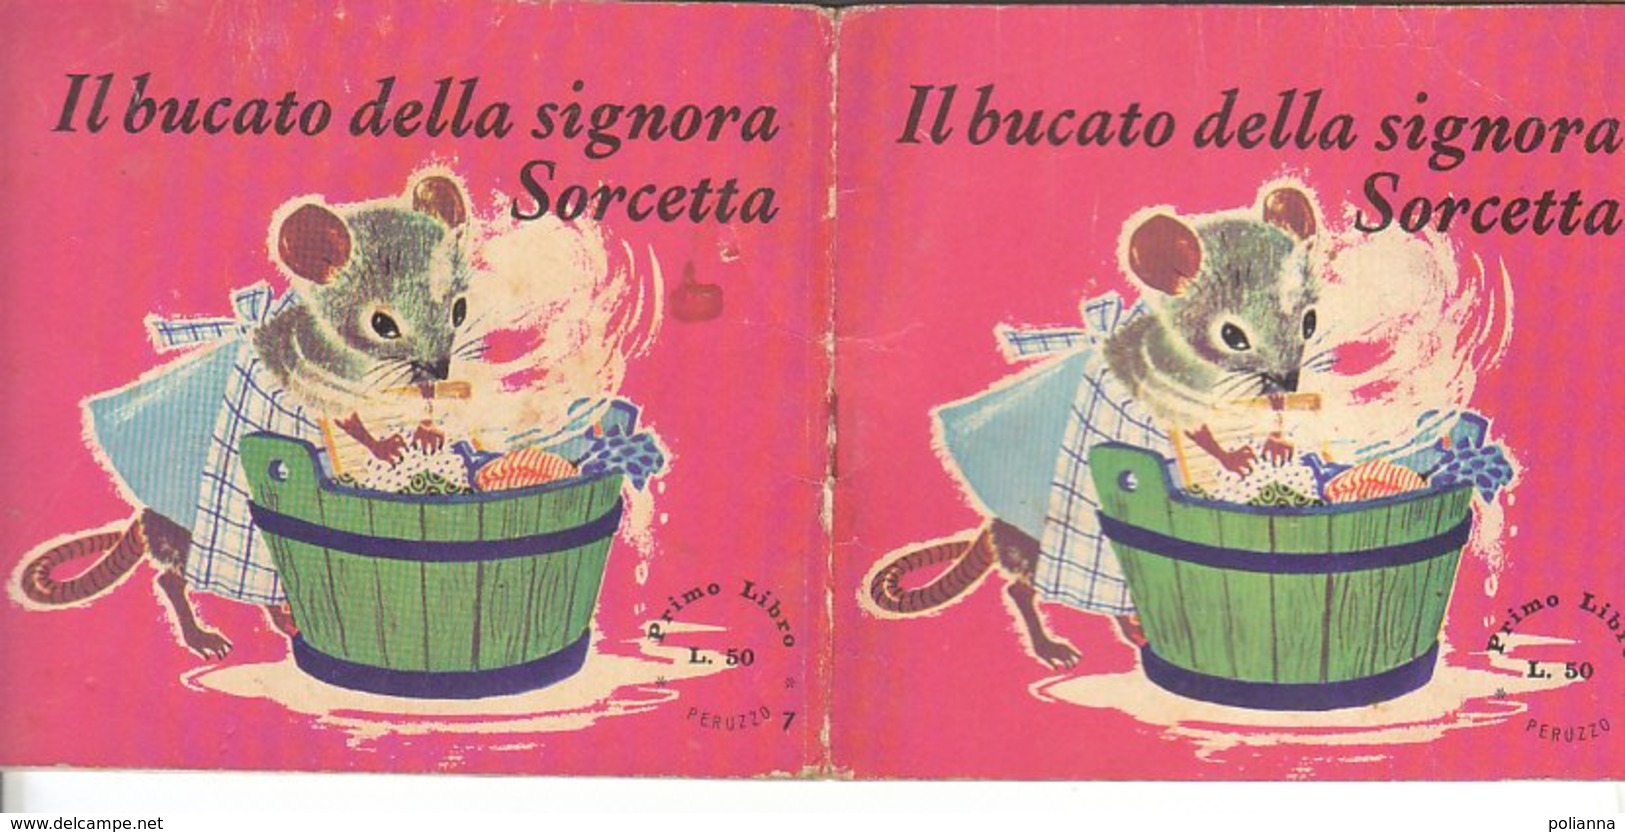 M#0V83 Albetto Illustrato - Collana "Primo Libro" IL BUCATO DELLA SIGNORA SORCETTA  Ed.Peruzzo/Ill.NANS VAN LEEUWEN - Old